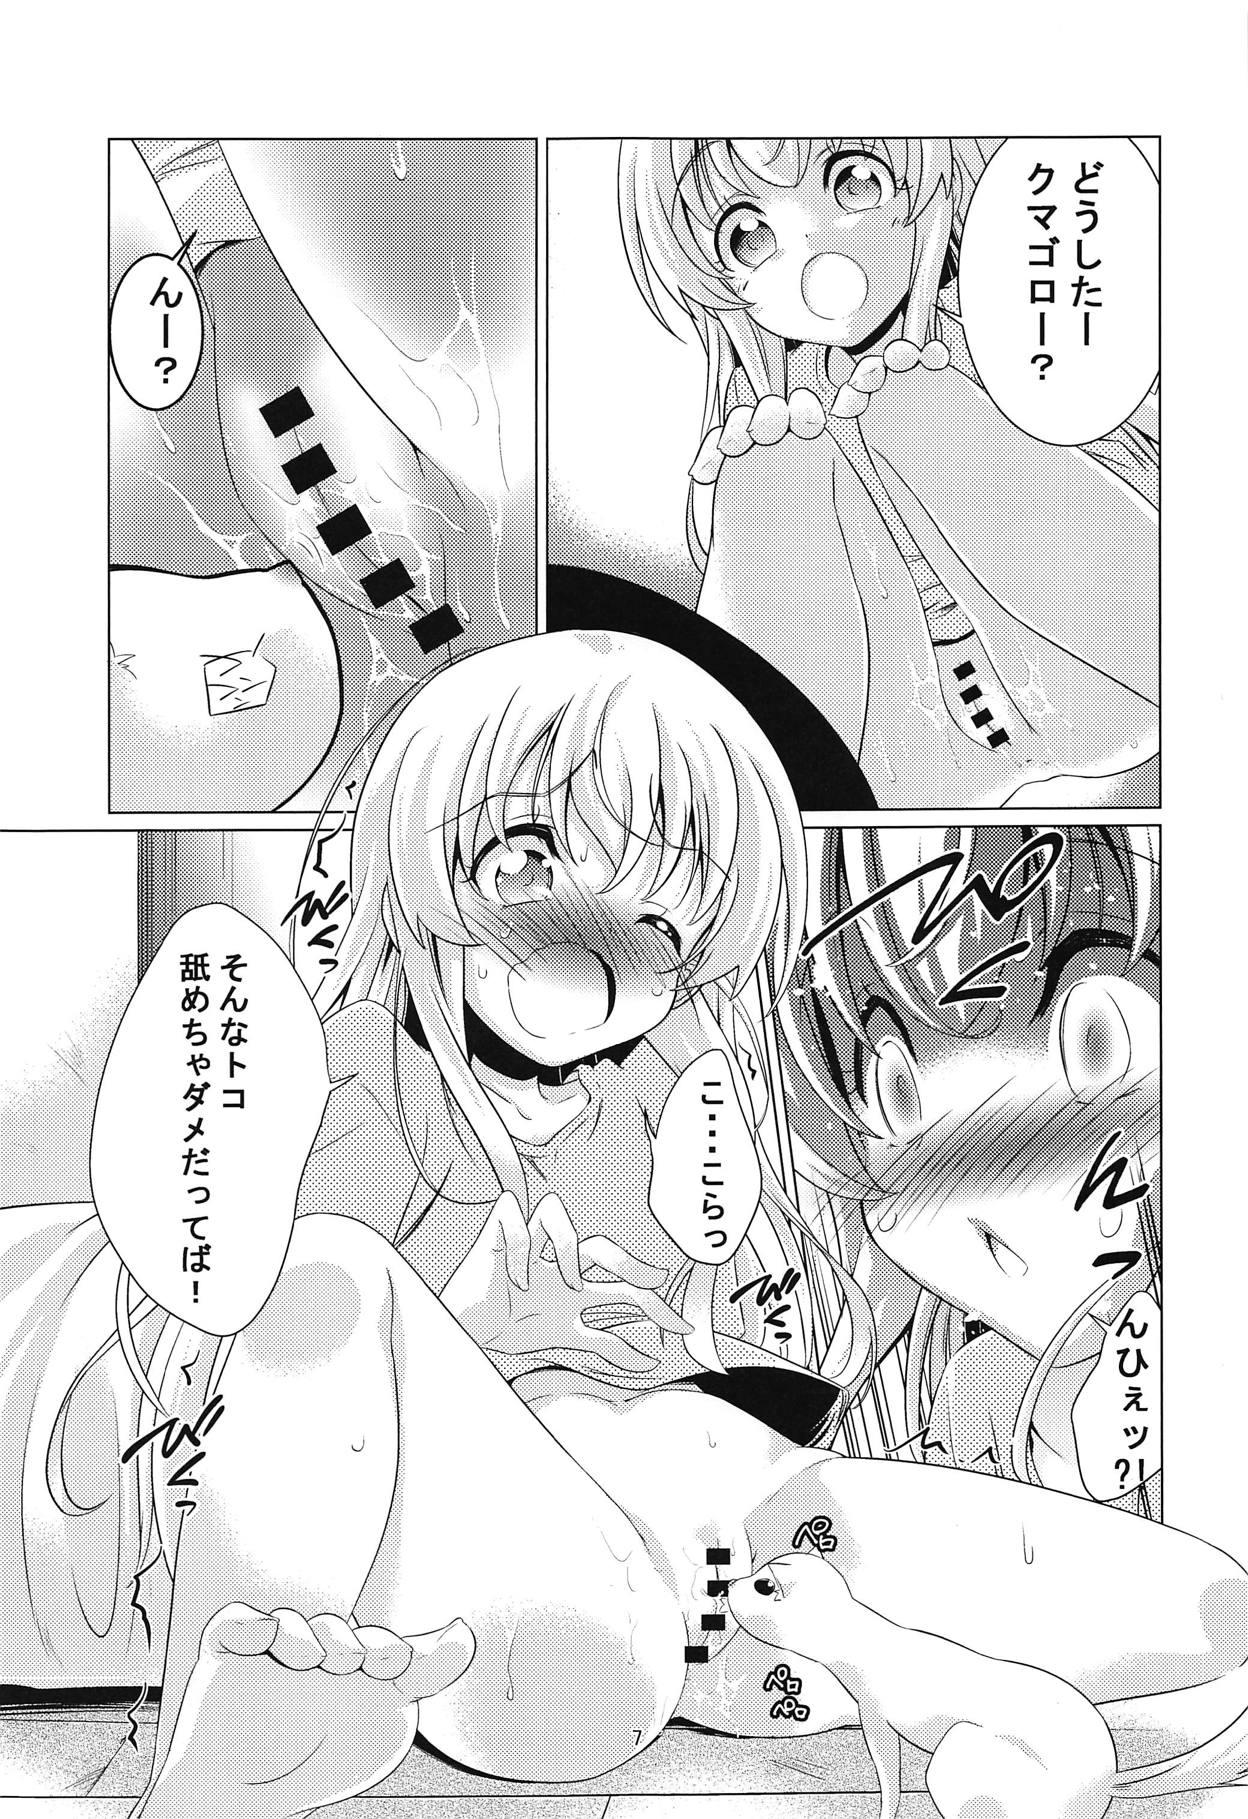 Party Uchi no Pet ga Namesugiru! - Uchi no maid ga uzasugiru Glasses - Page 6